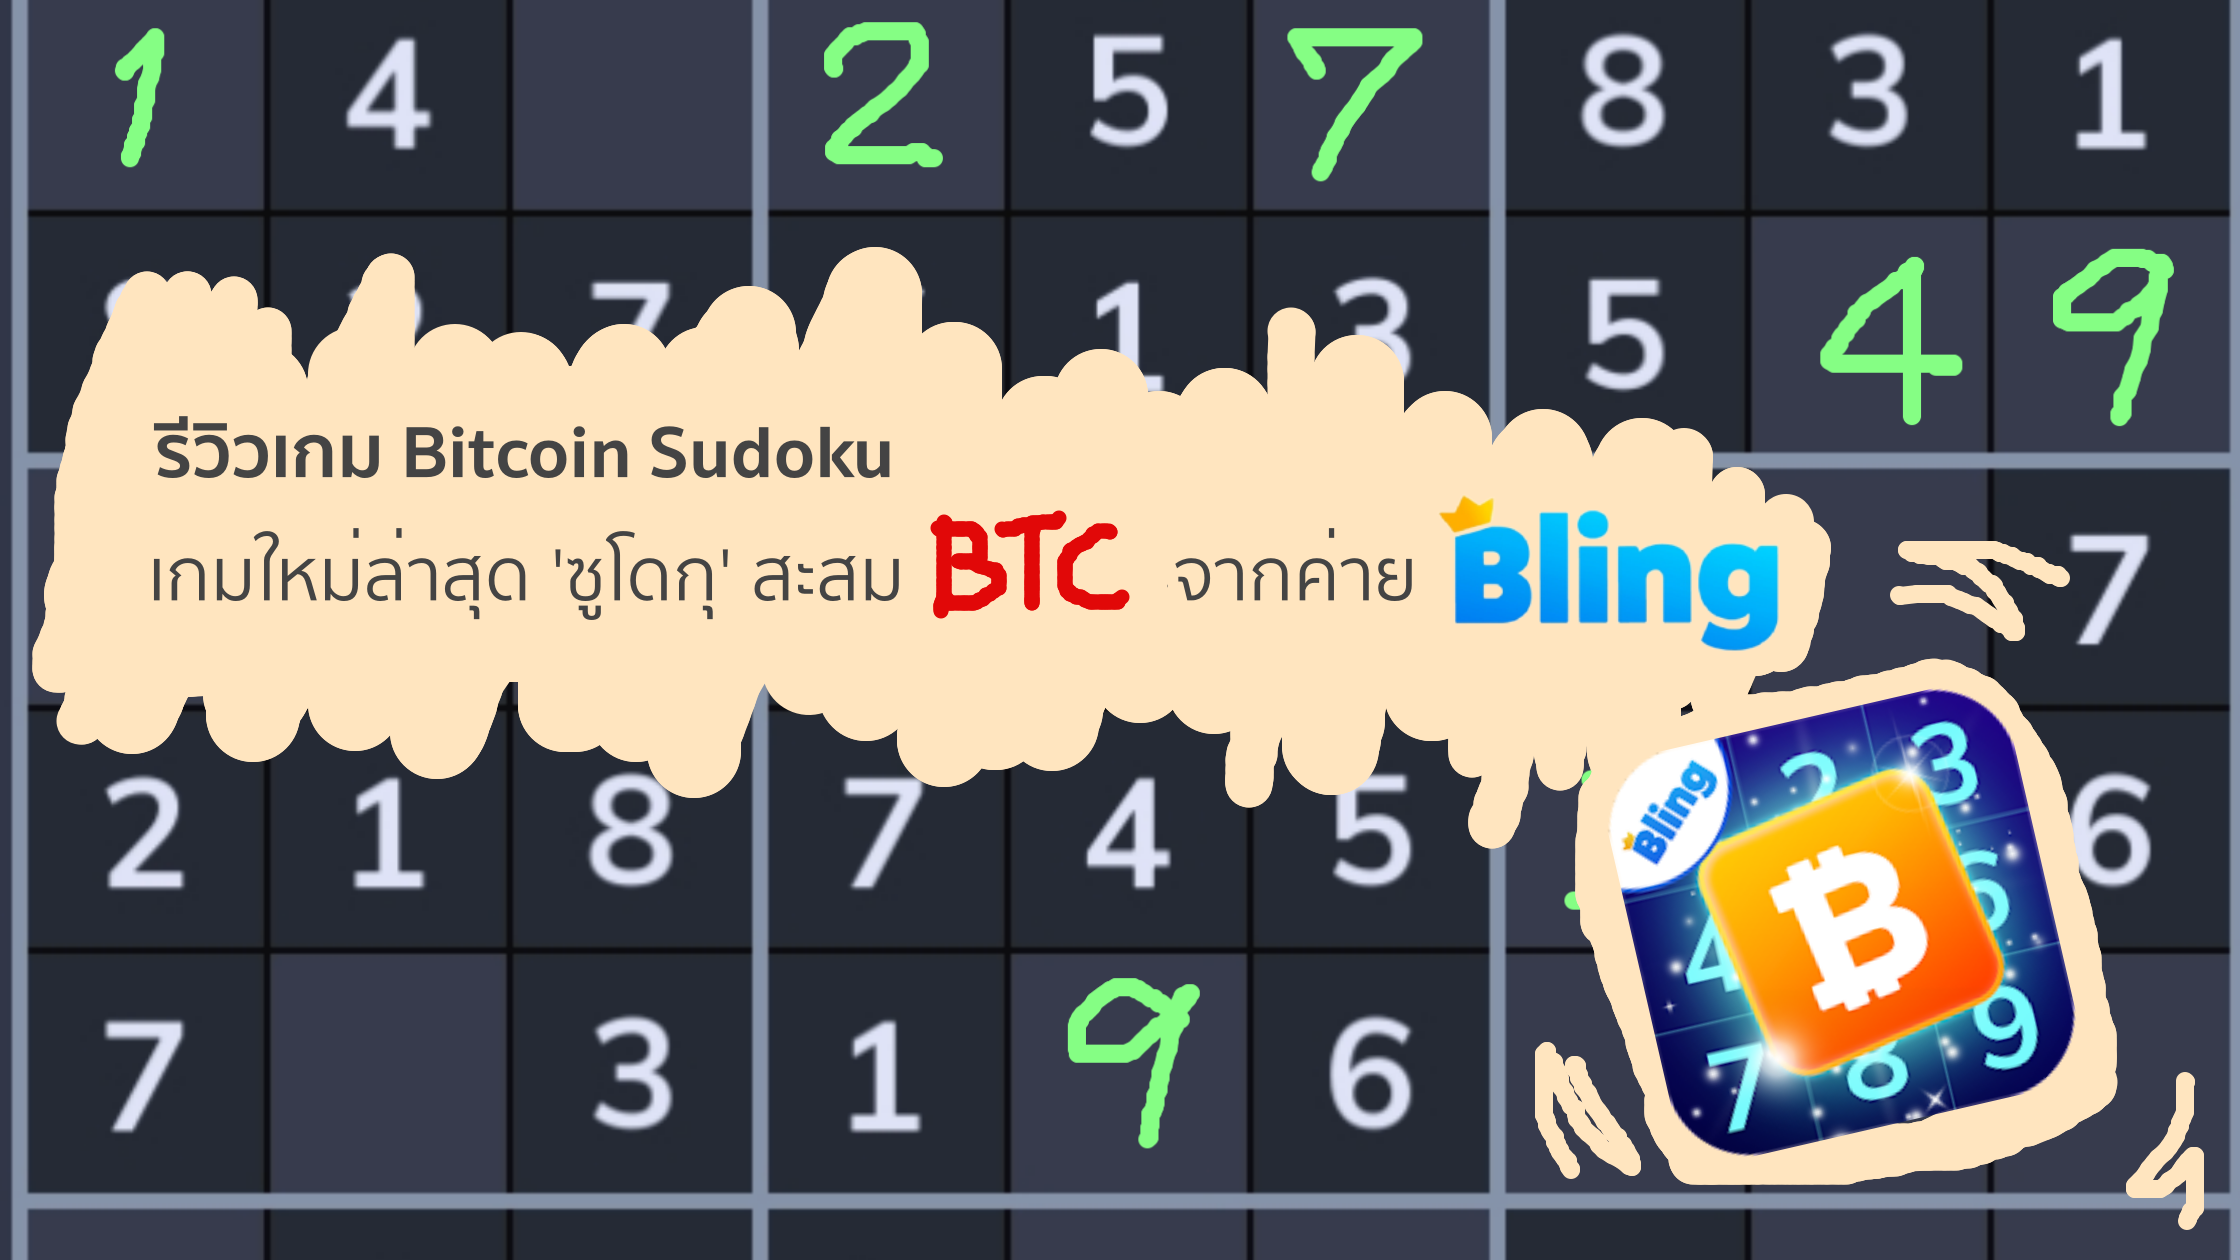 รีวิวเกม Bitcoin Sudoku เกมใหม่ล่าสุด 'ซูโดกุ' สะสม Btc จากค่าย Bling |  Trueid Creator